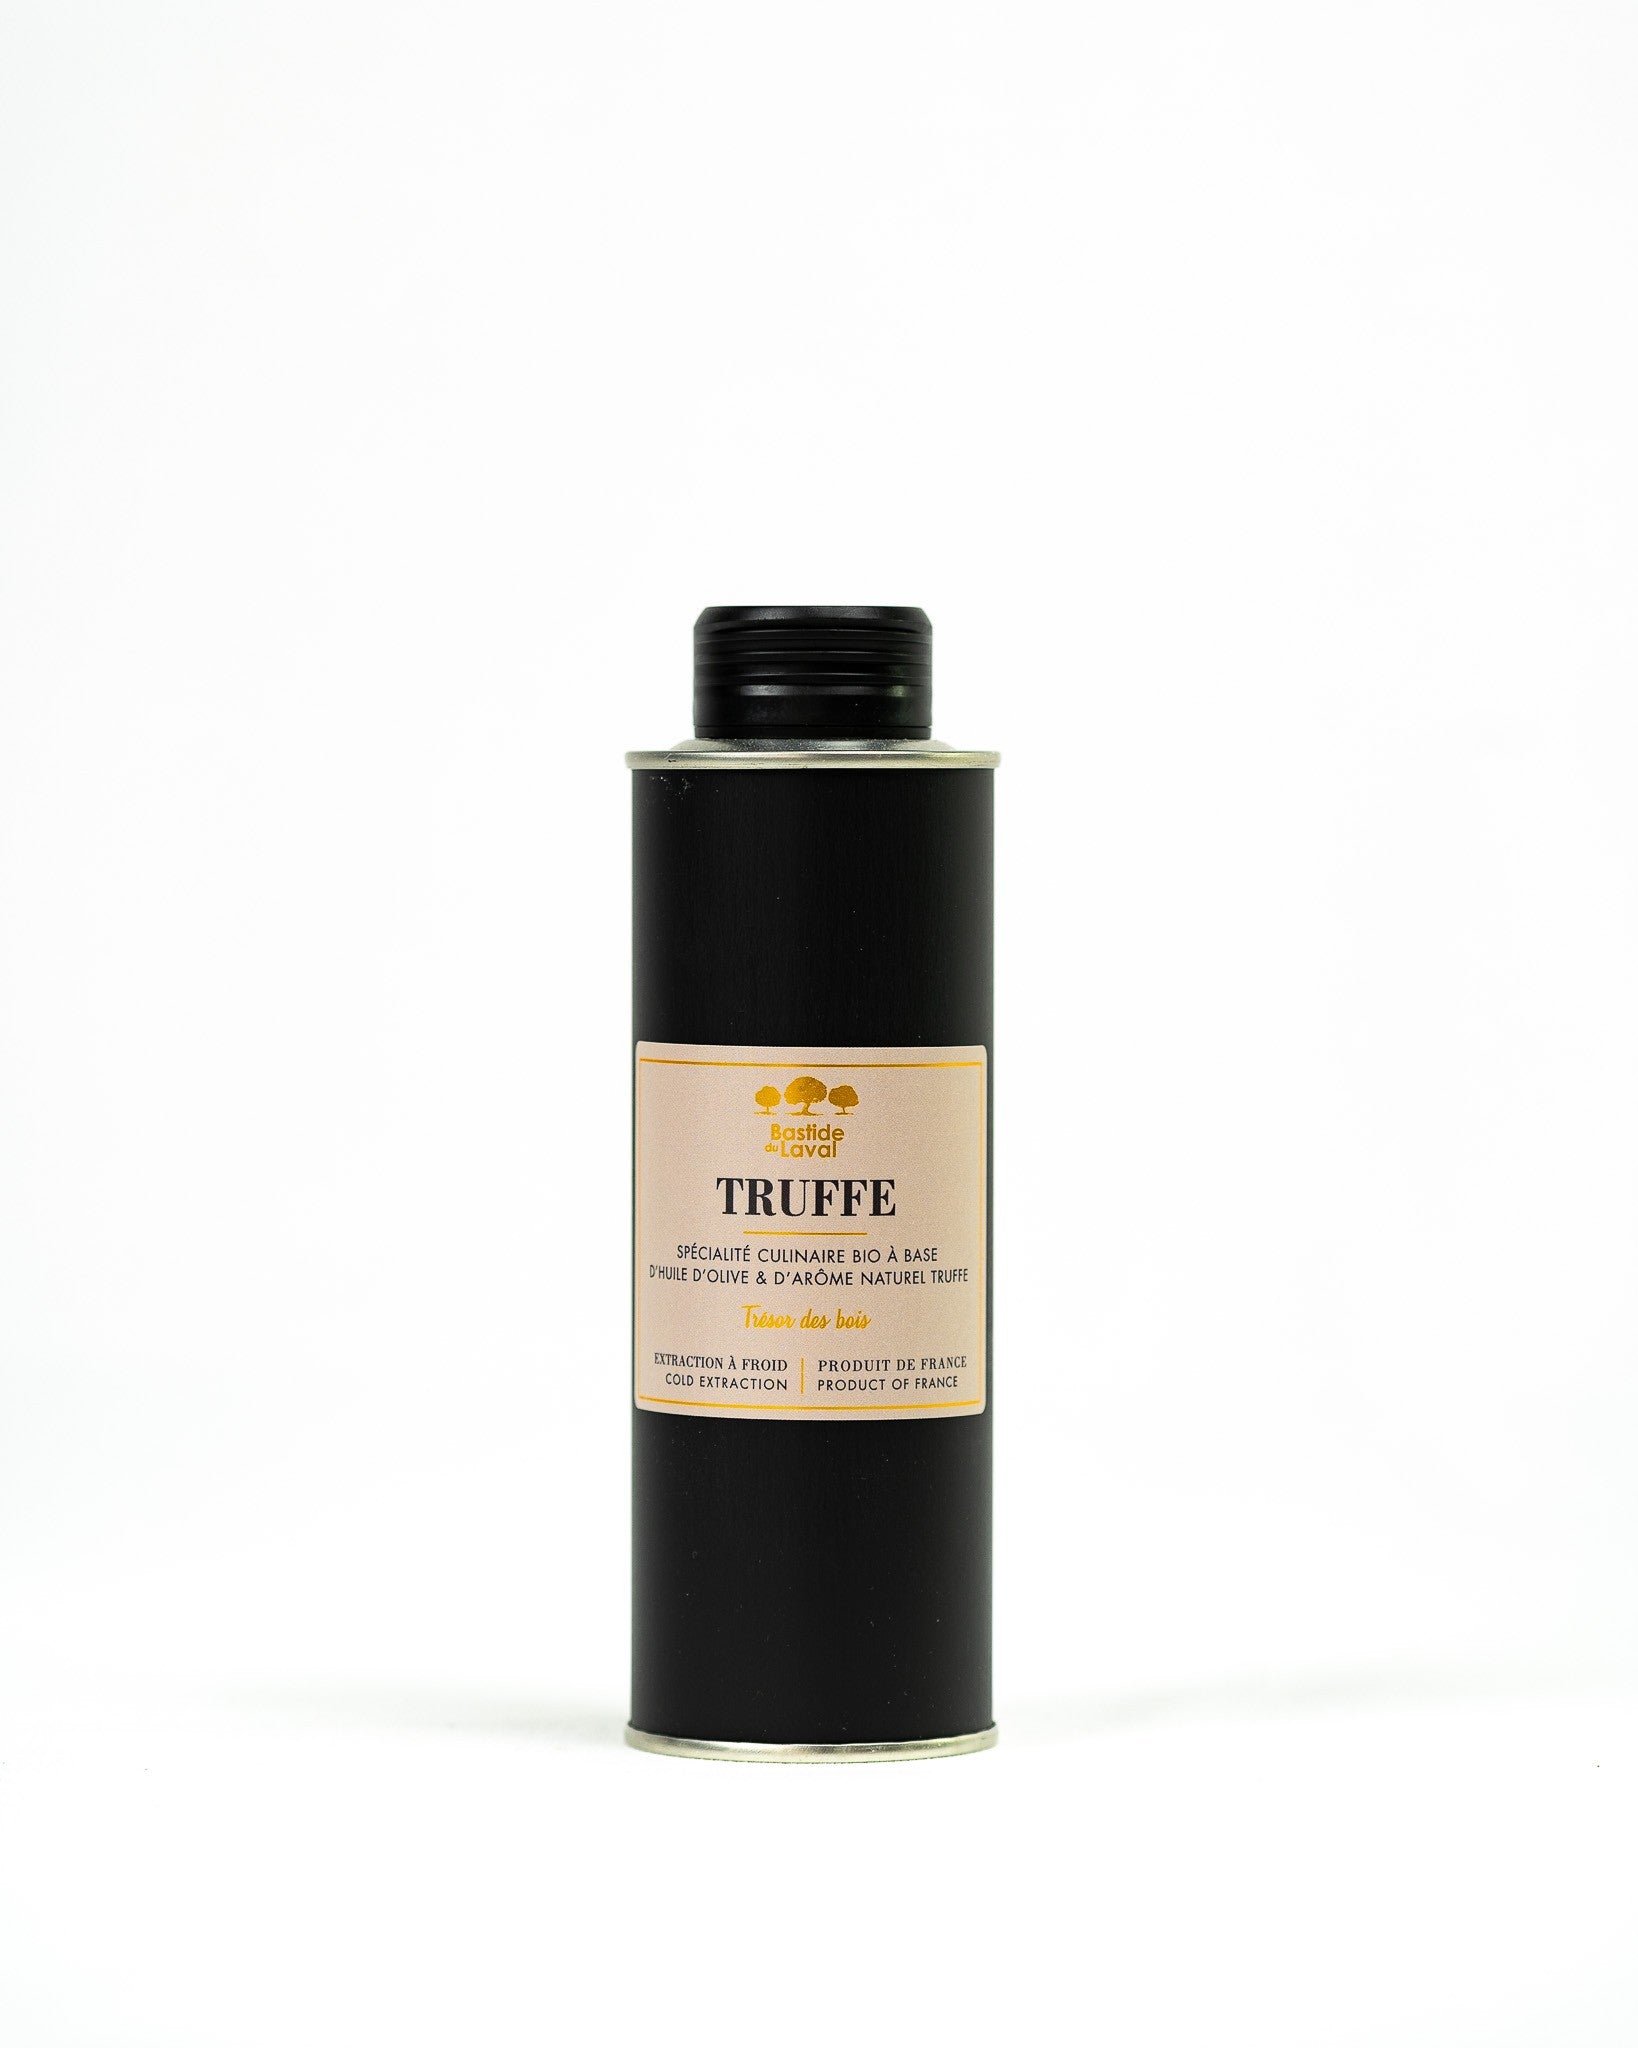 Vous souhaitez acheter en ligne l'huile d'olive aromatisée à la Truffe ?